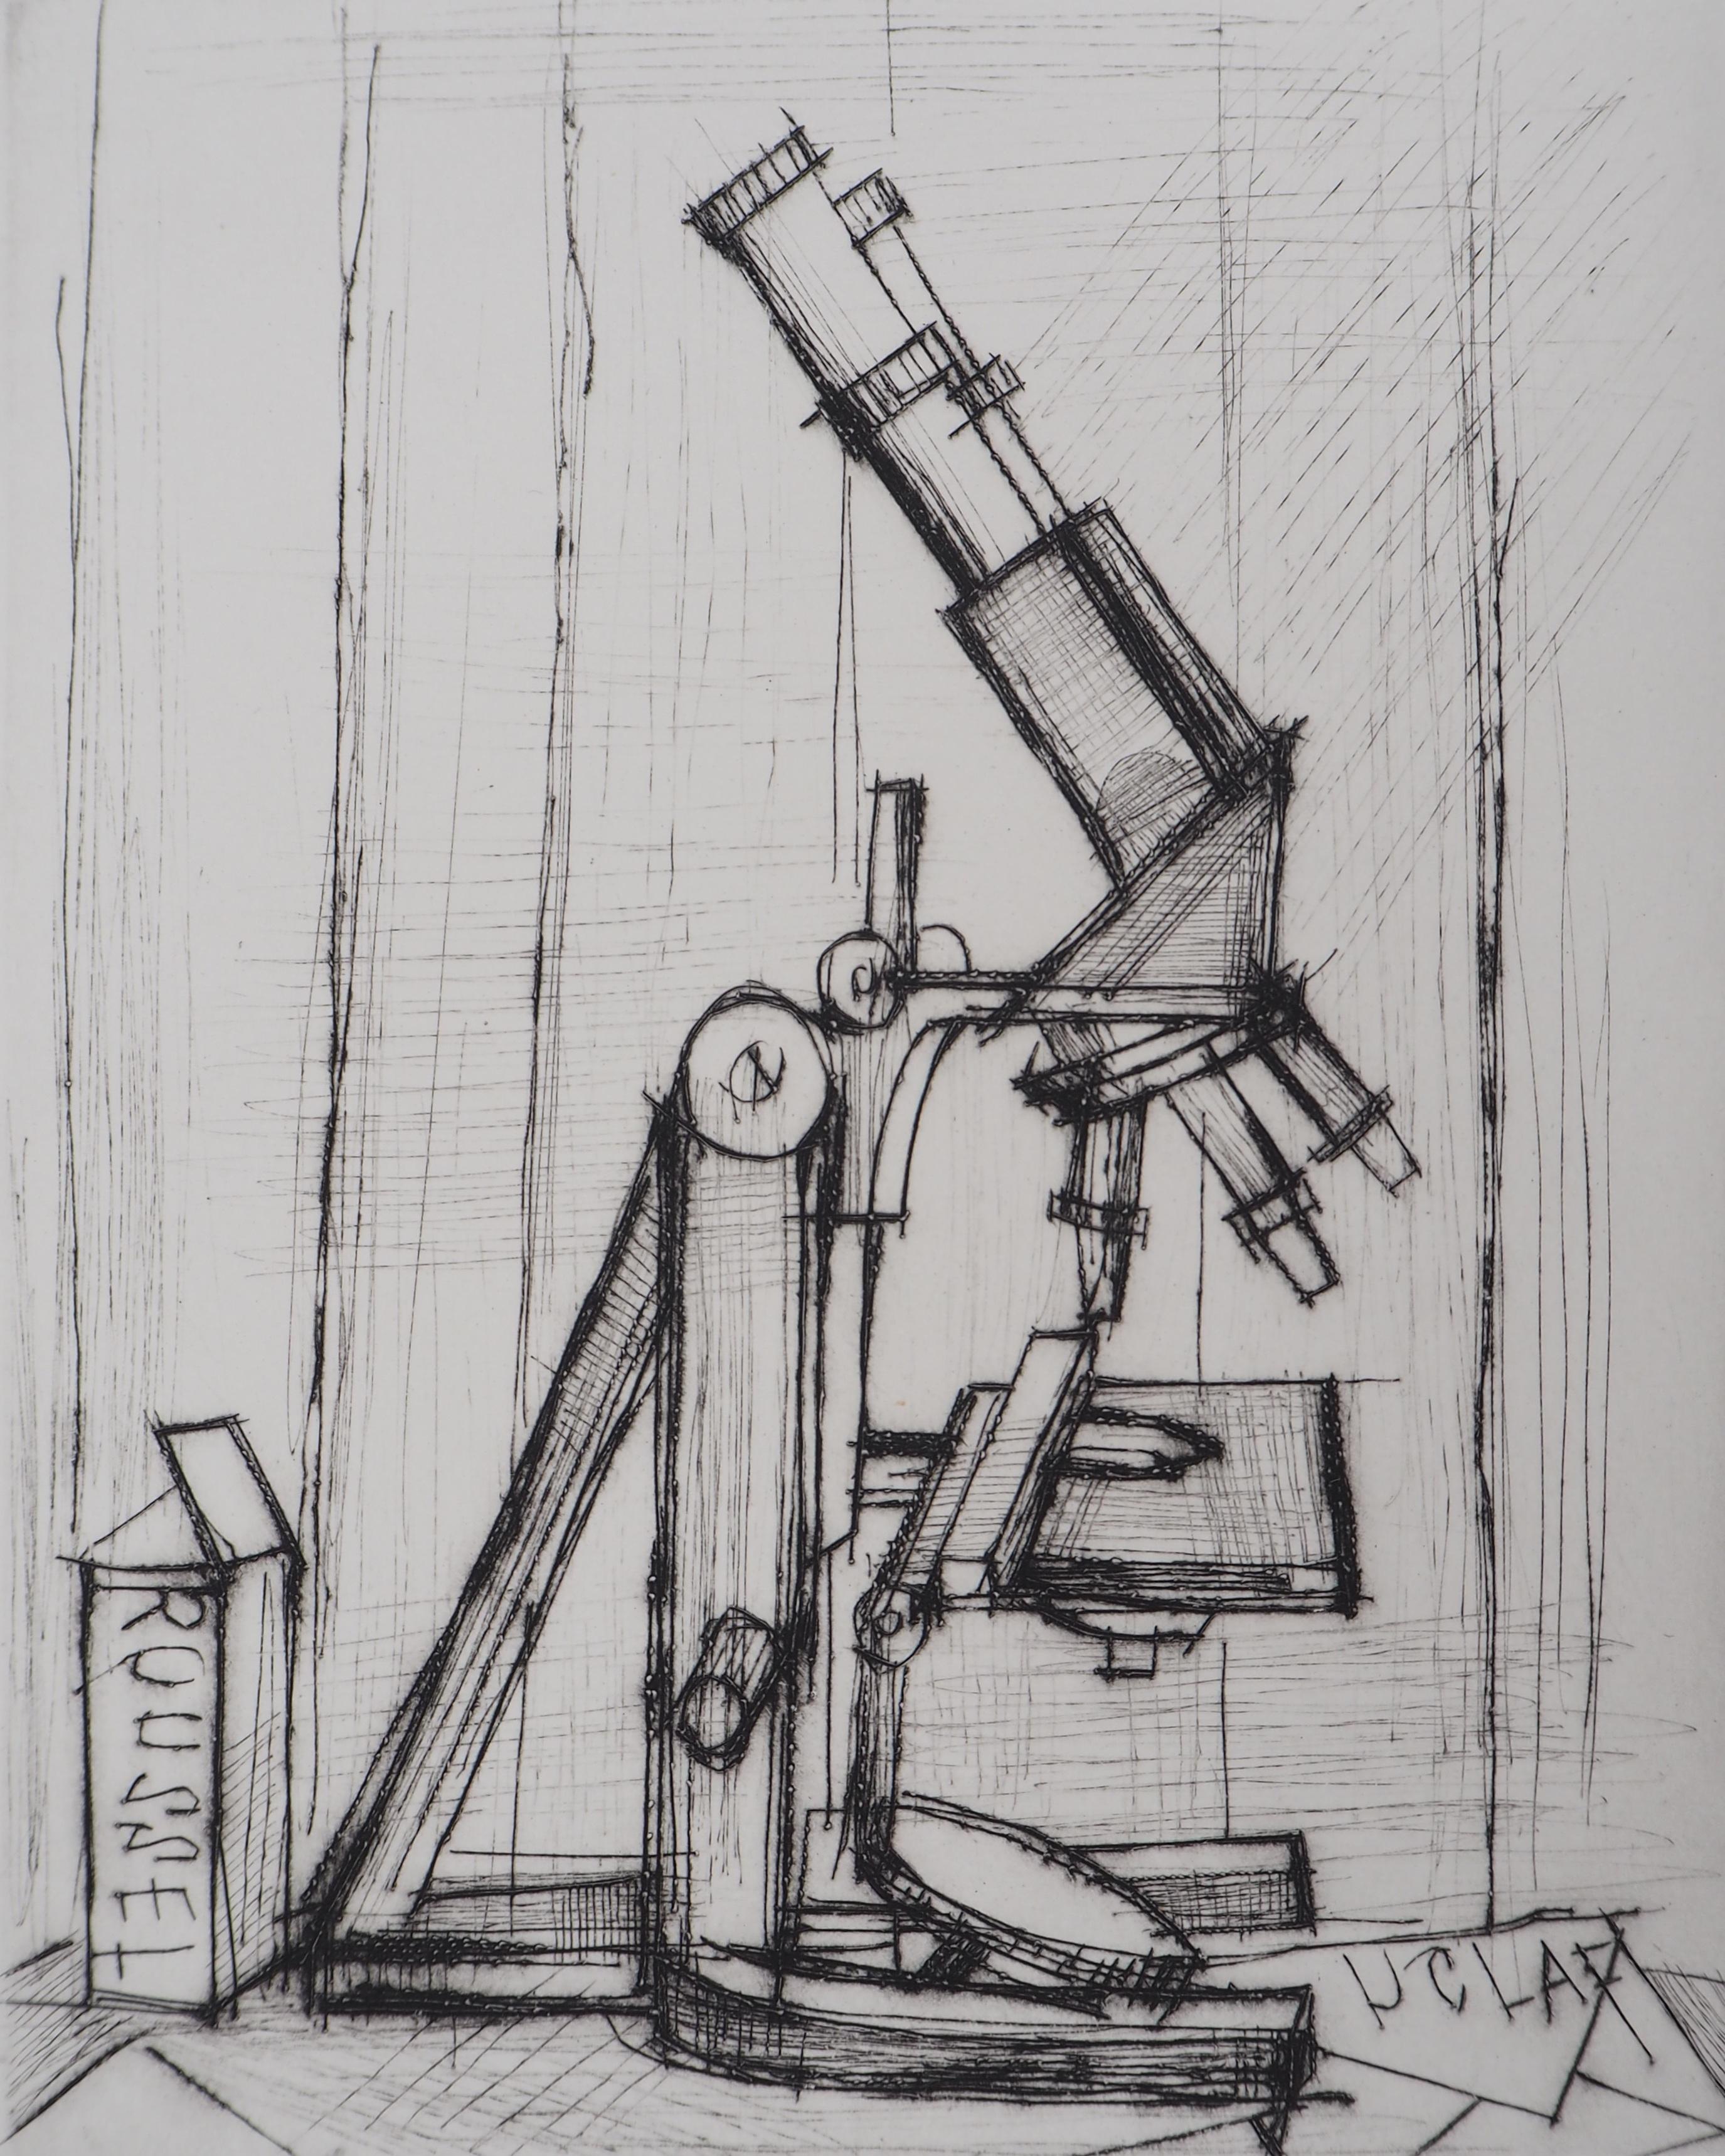 Bernard BUFFET
Mikroskop, 1959

Original-Radierung 
Handsigniert mit Bleistift
Nummeriert / 100 Exemplare
Auf Vellum BFK Rives 38 x 28 cm (ca. 11 x 14,9 Zoll)

REFERENZEN : Gesamtkatalog Bernard Buffet Graveur, Référence Reims #23

Ausgezeichneter